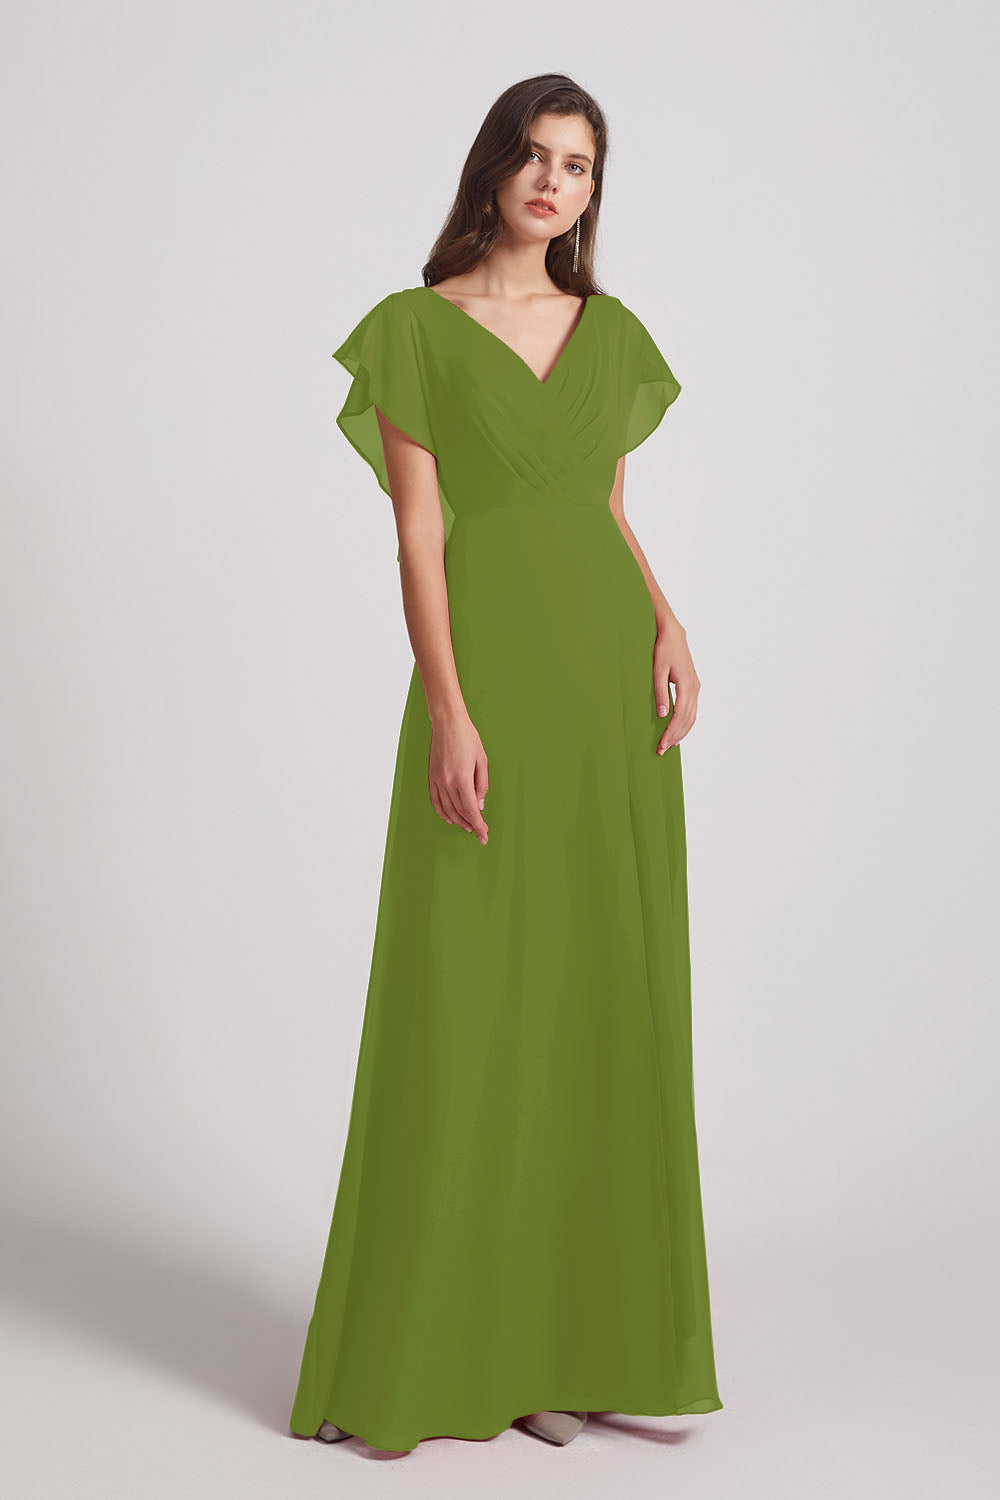 Alfa Bridal Olive Green V-Neck Chiffon Long Backless Bridesmaid Dresses with Side Slit (AF0071)